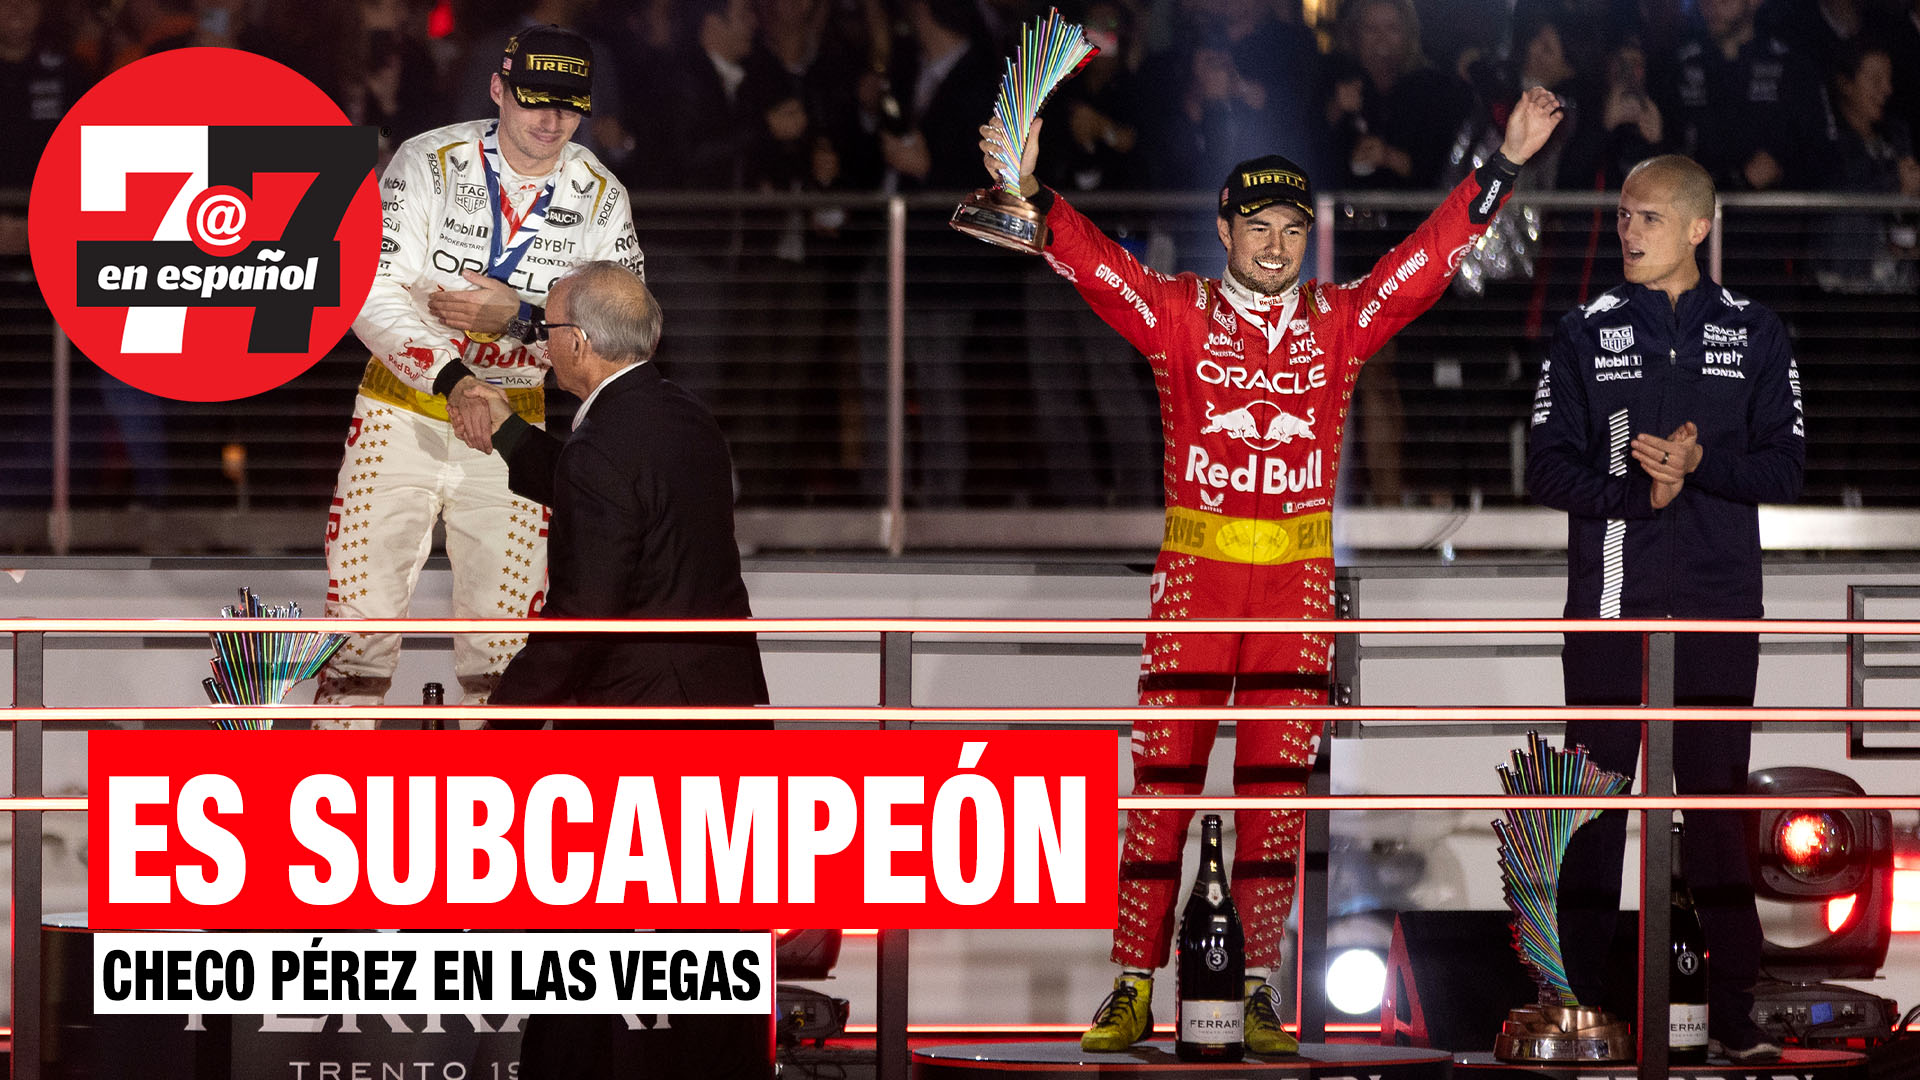 Noticias de Las Vegas | Checo Pérez es subcampeón de la F1 tras carrera en el Strip